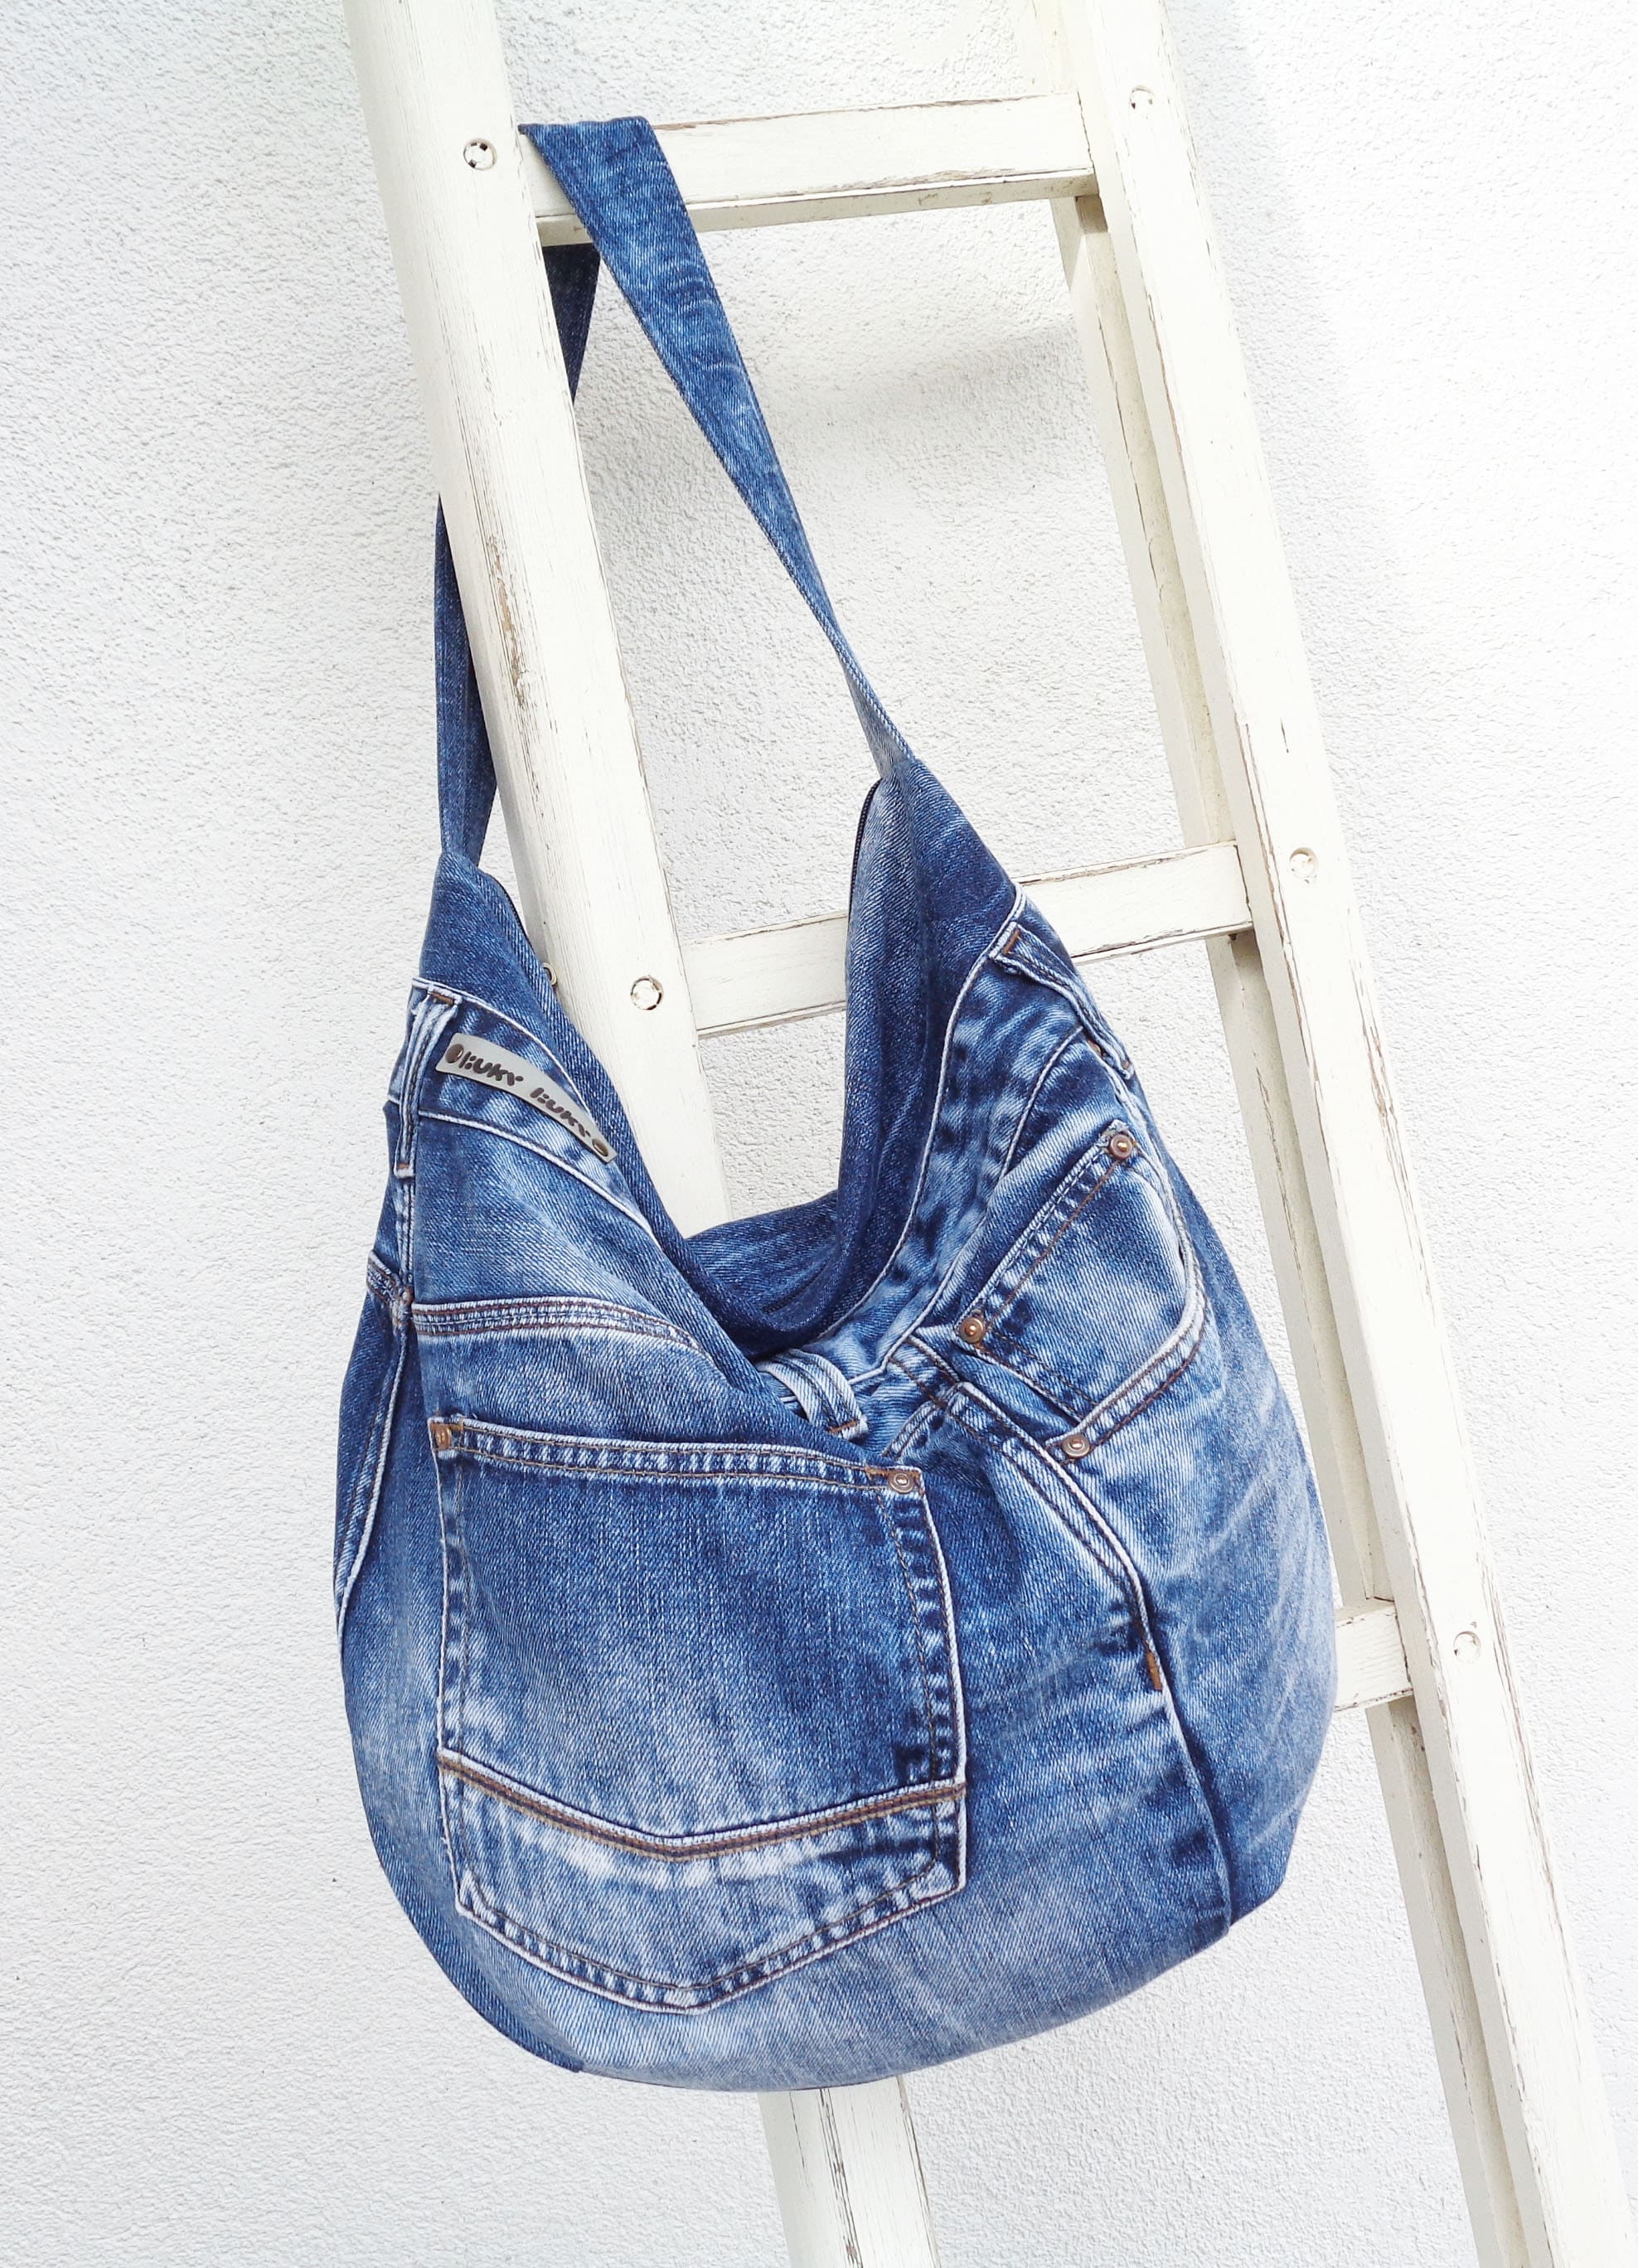 Large Denim Bag Slouchy Shoulder Bag Blue Washed Jeans Bag - Etsy